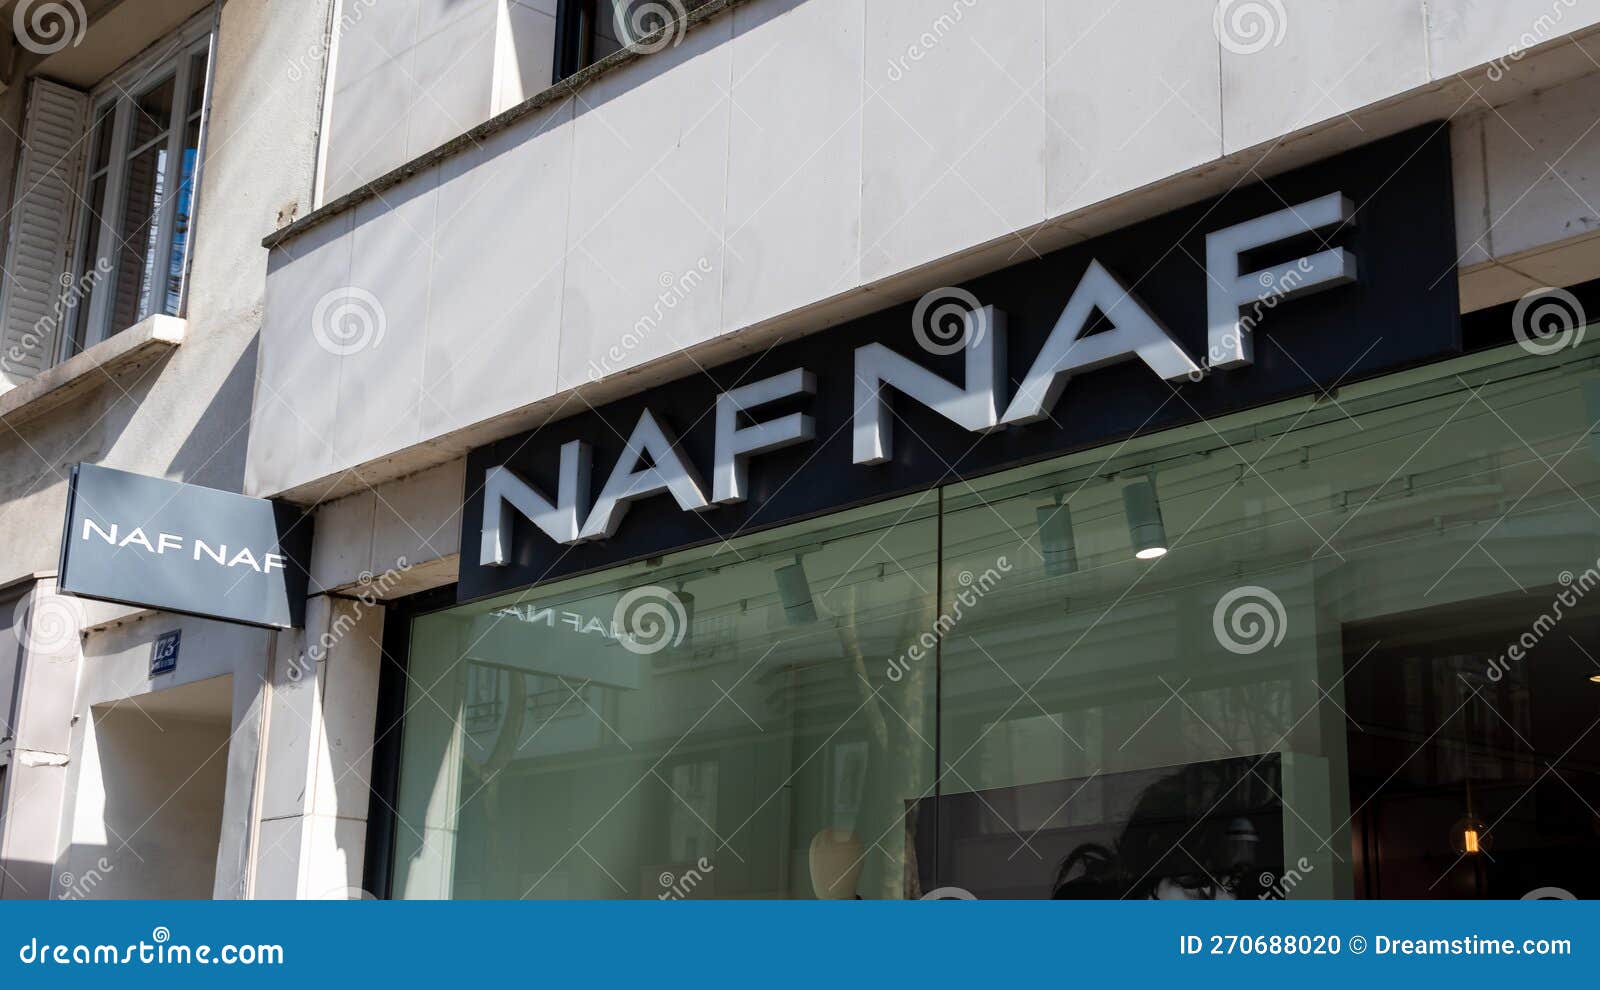 NAF NAF Paris